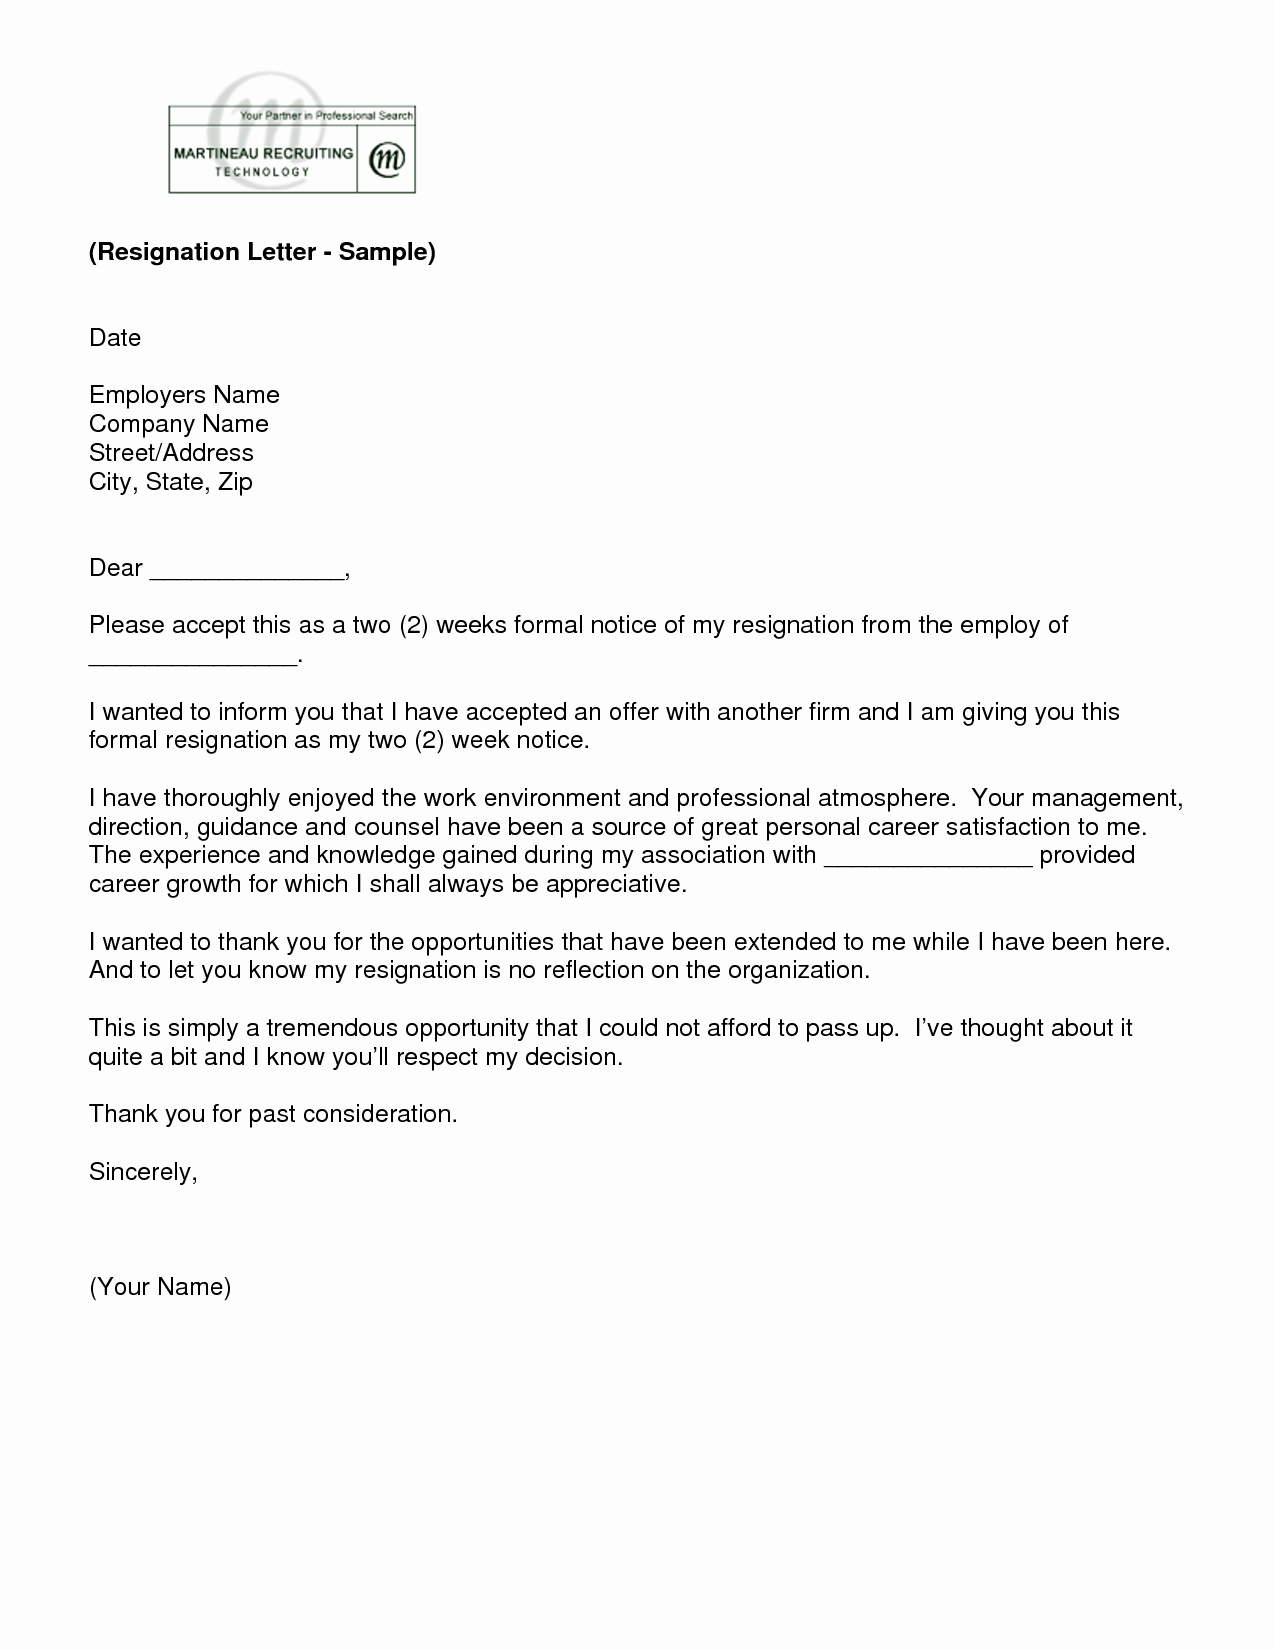 Resignation Letter Sample Template Lovely Letter Of Resignation 2 Weeks Notice Template